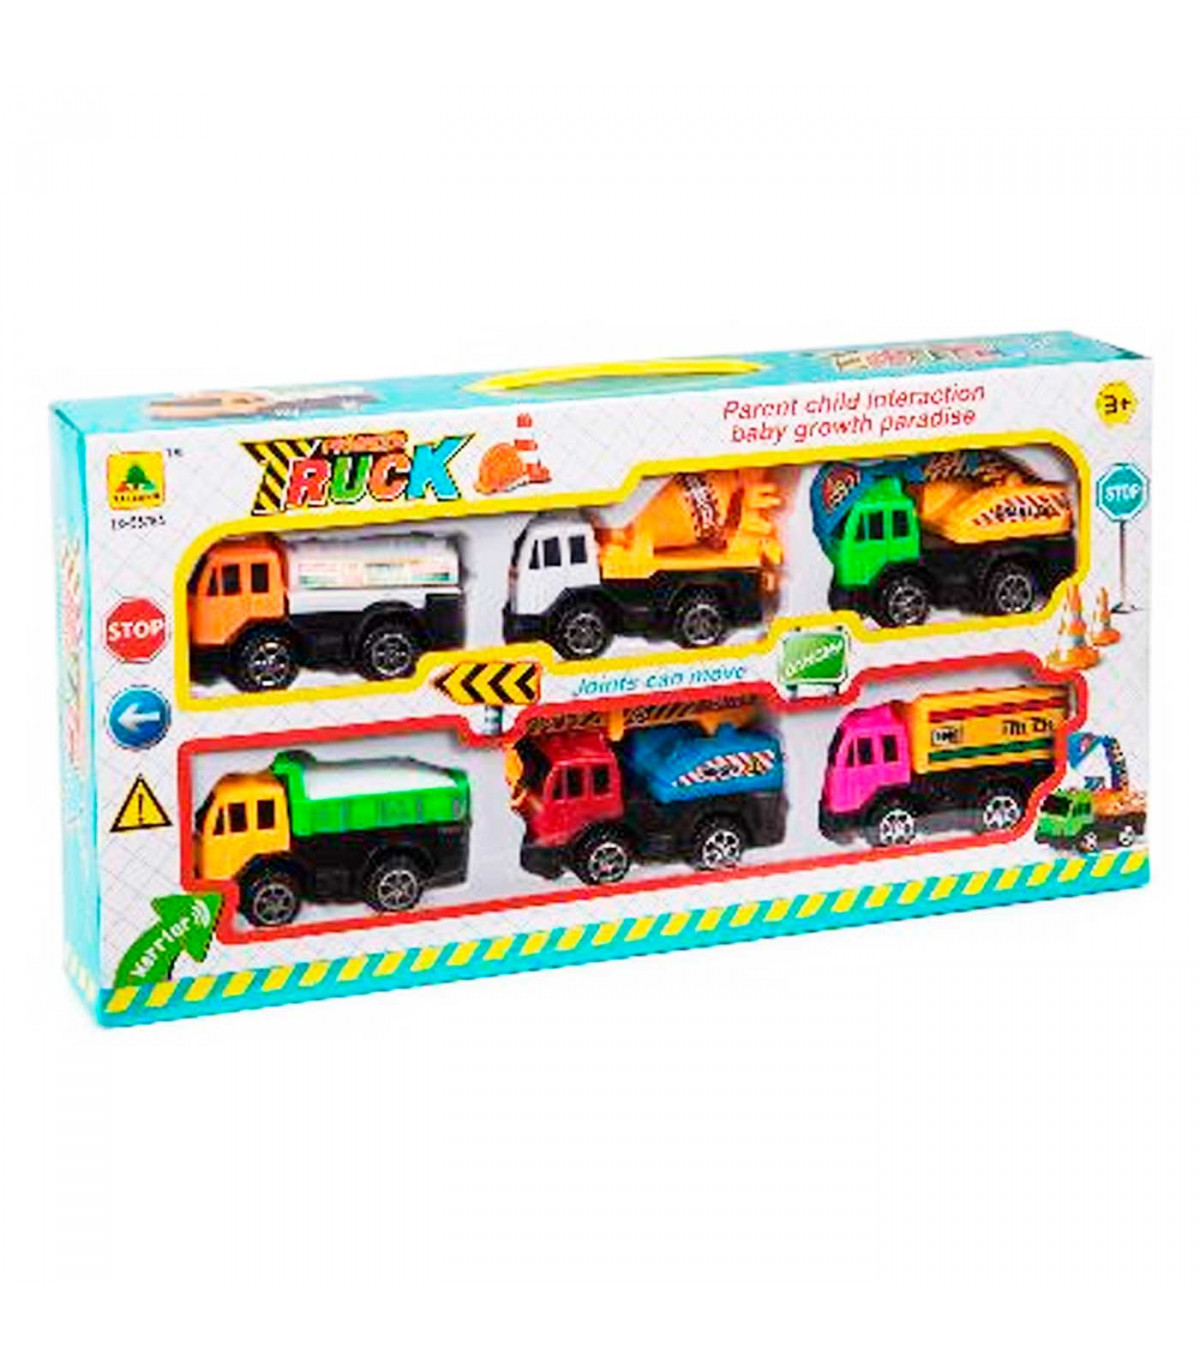 Pack de camiones de obra retro y a fricción, juguete de construcción, coches para niños, dimensiones de vehículo 6